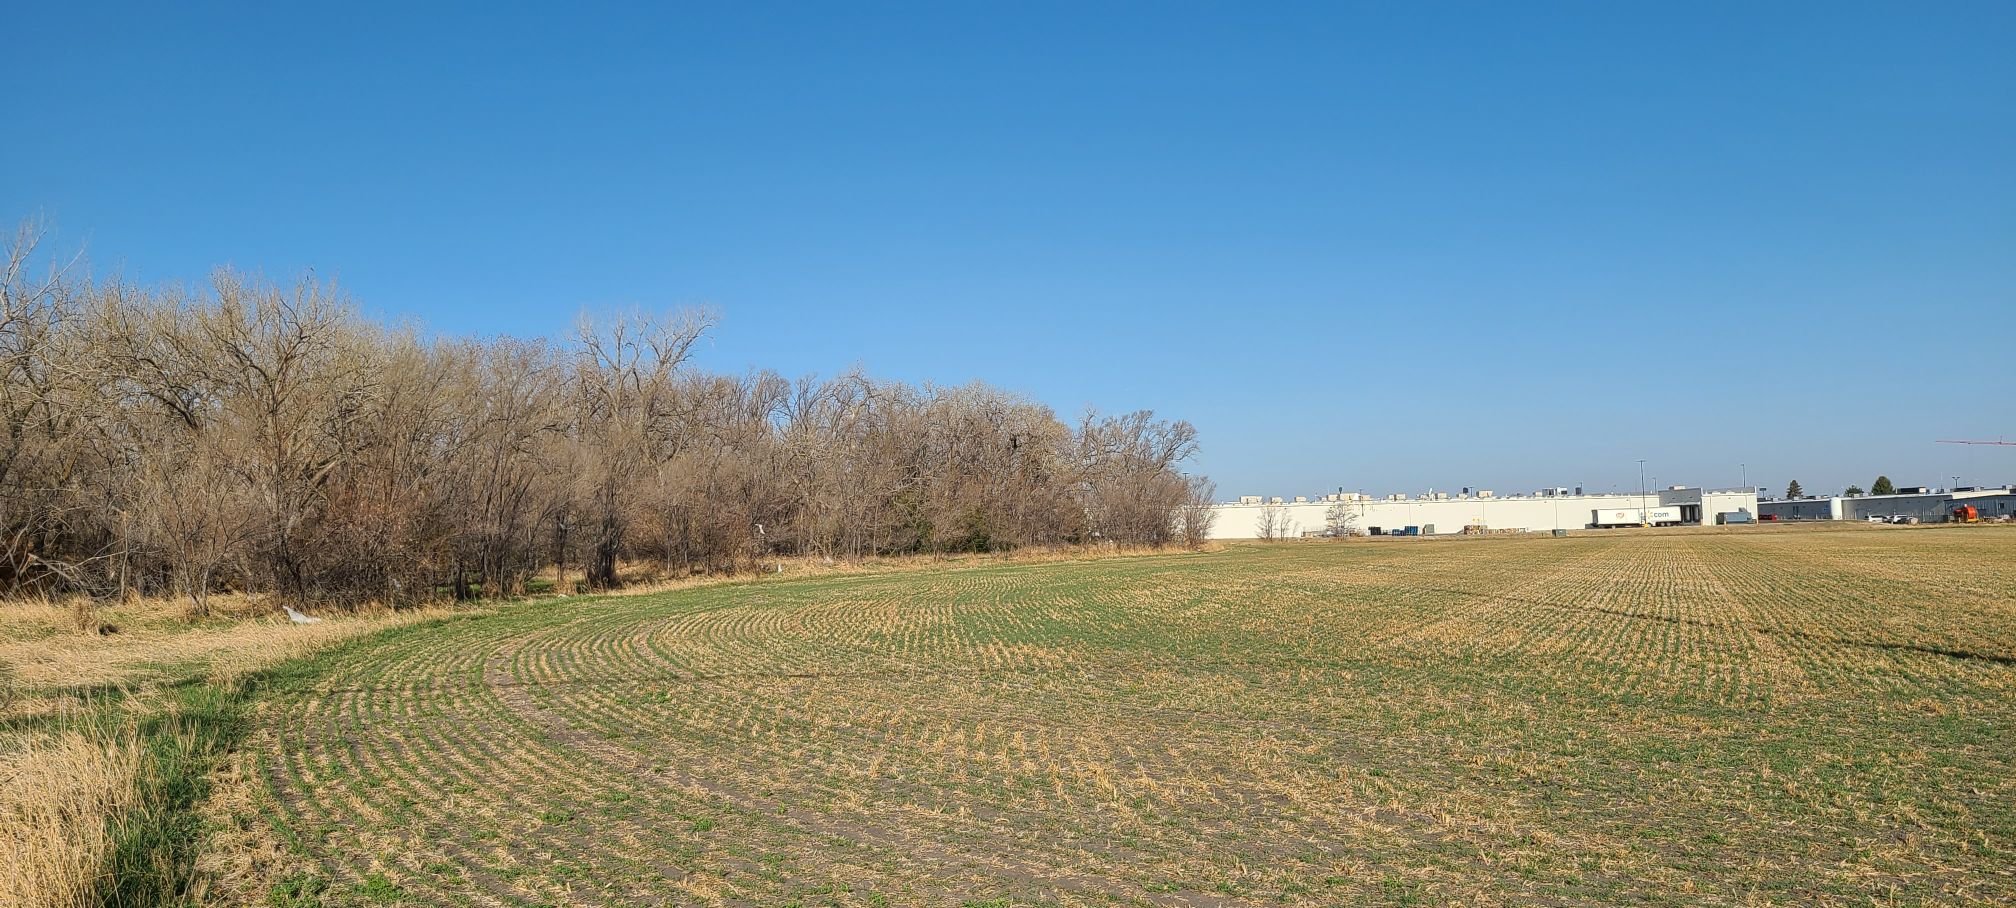 Nebraska land for sale - 12.36 acres for commercial or residential properties in North Platte, Nebraska